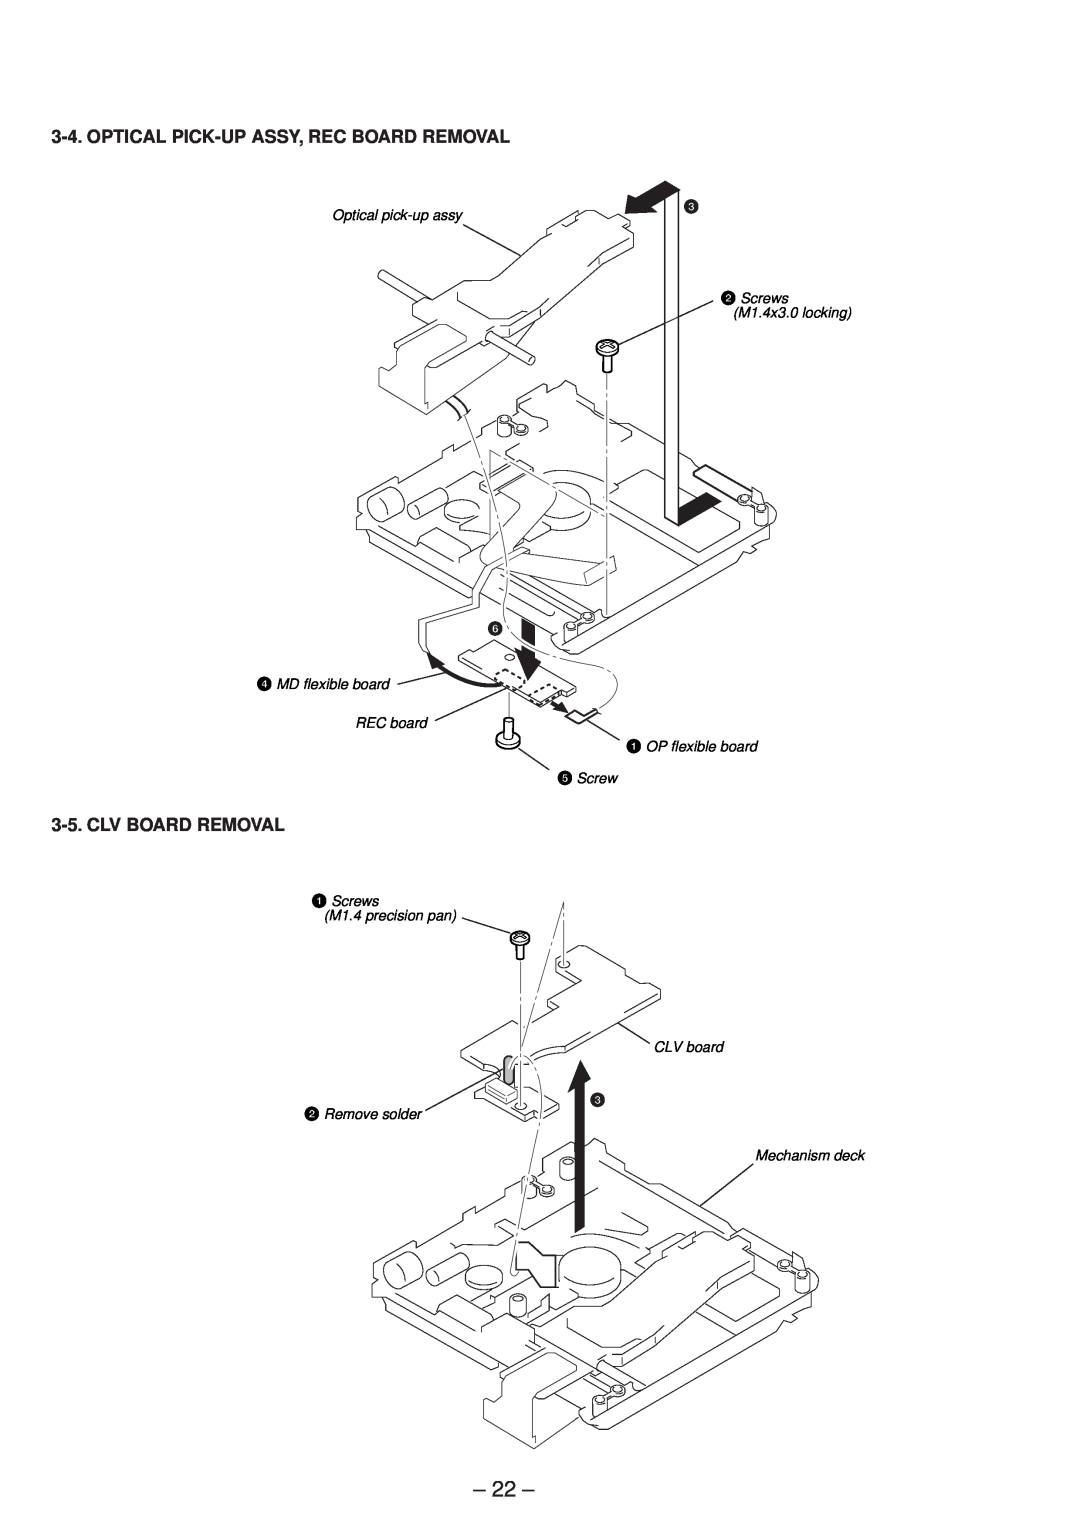 Sony MZ-R50 service manual Optical pick-upassy, Screws M1.4x3.0 locking, MD flexible board REC board 1 OP flexible board 